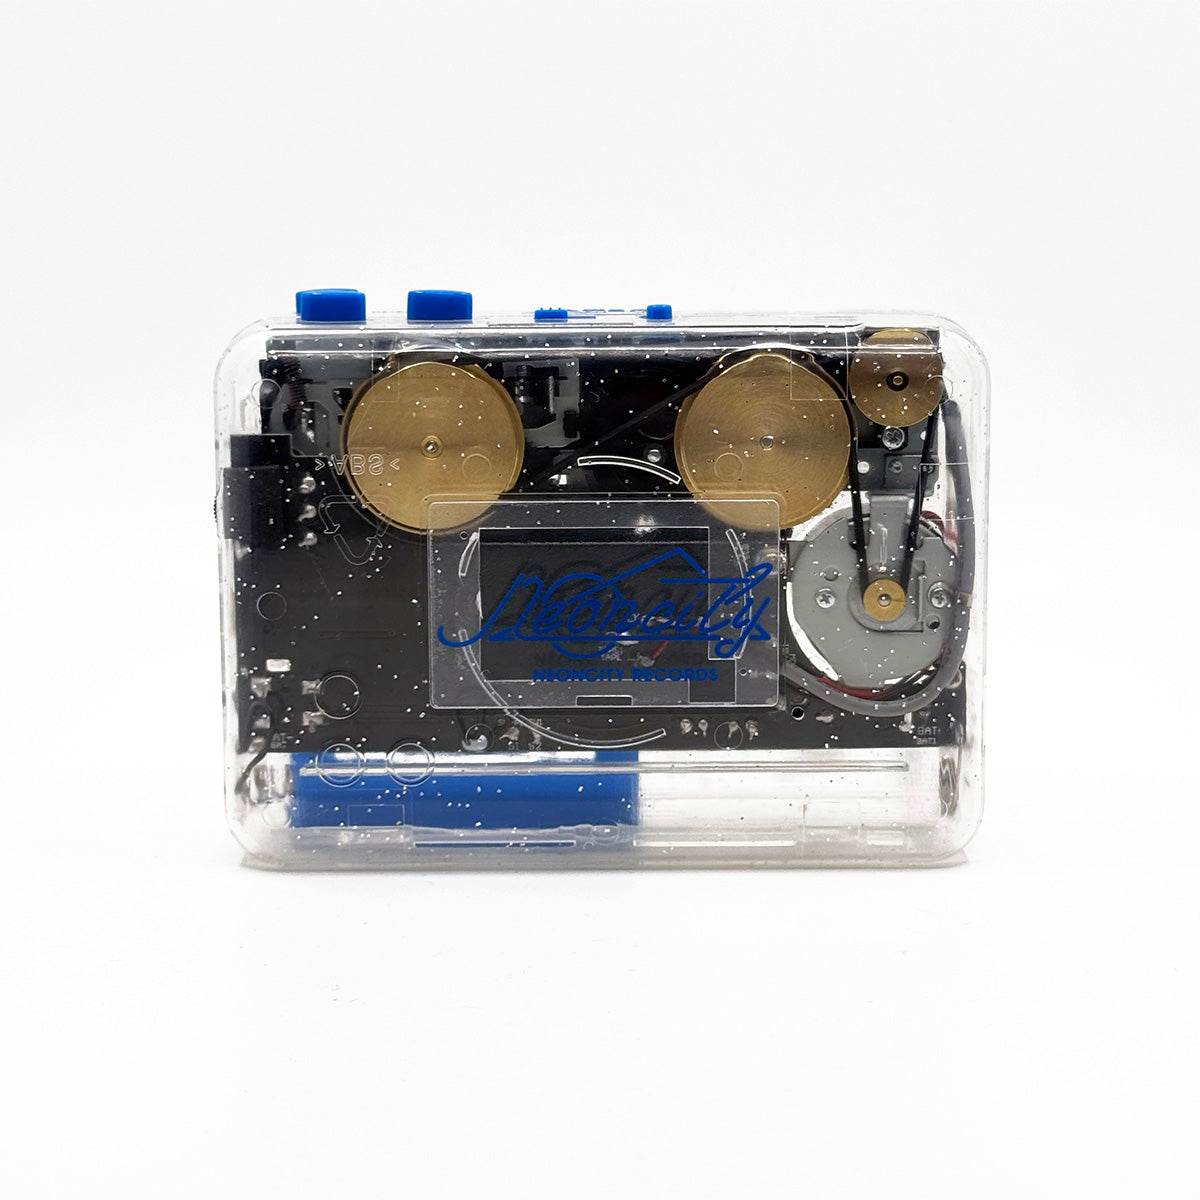 'Cassette Boy' Cassette Player - Neoncity Records